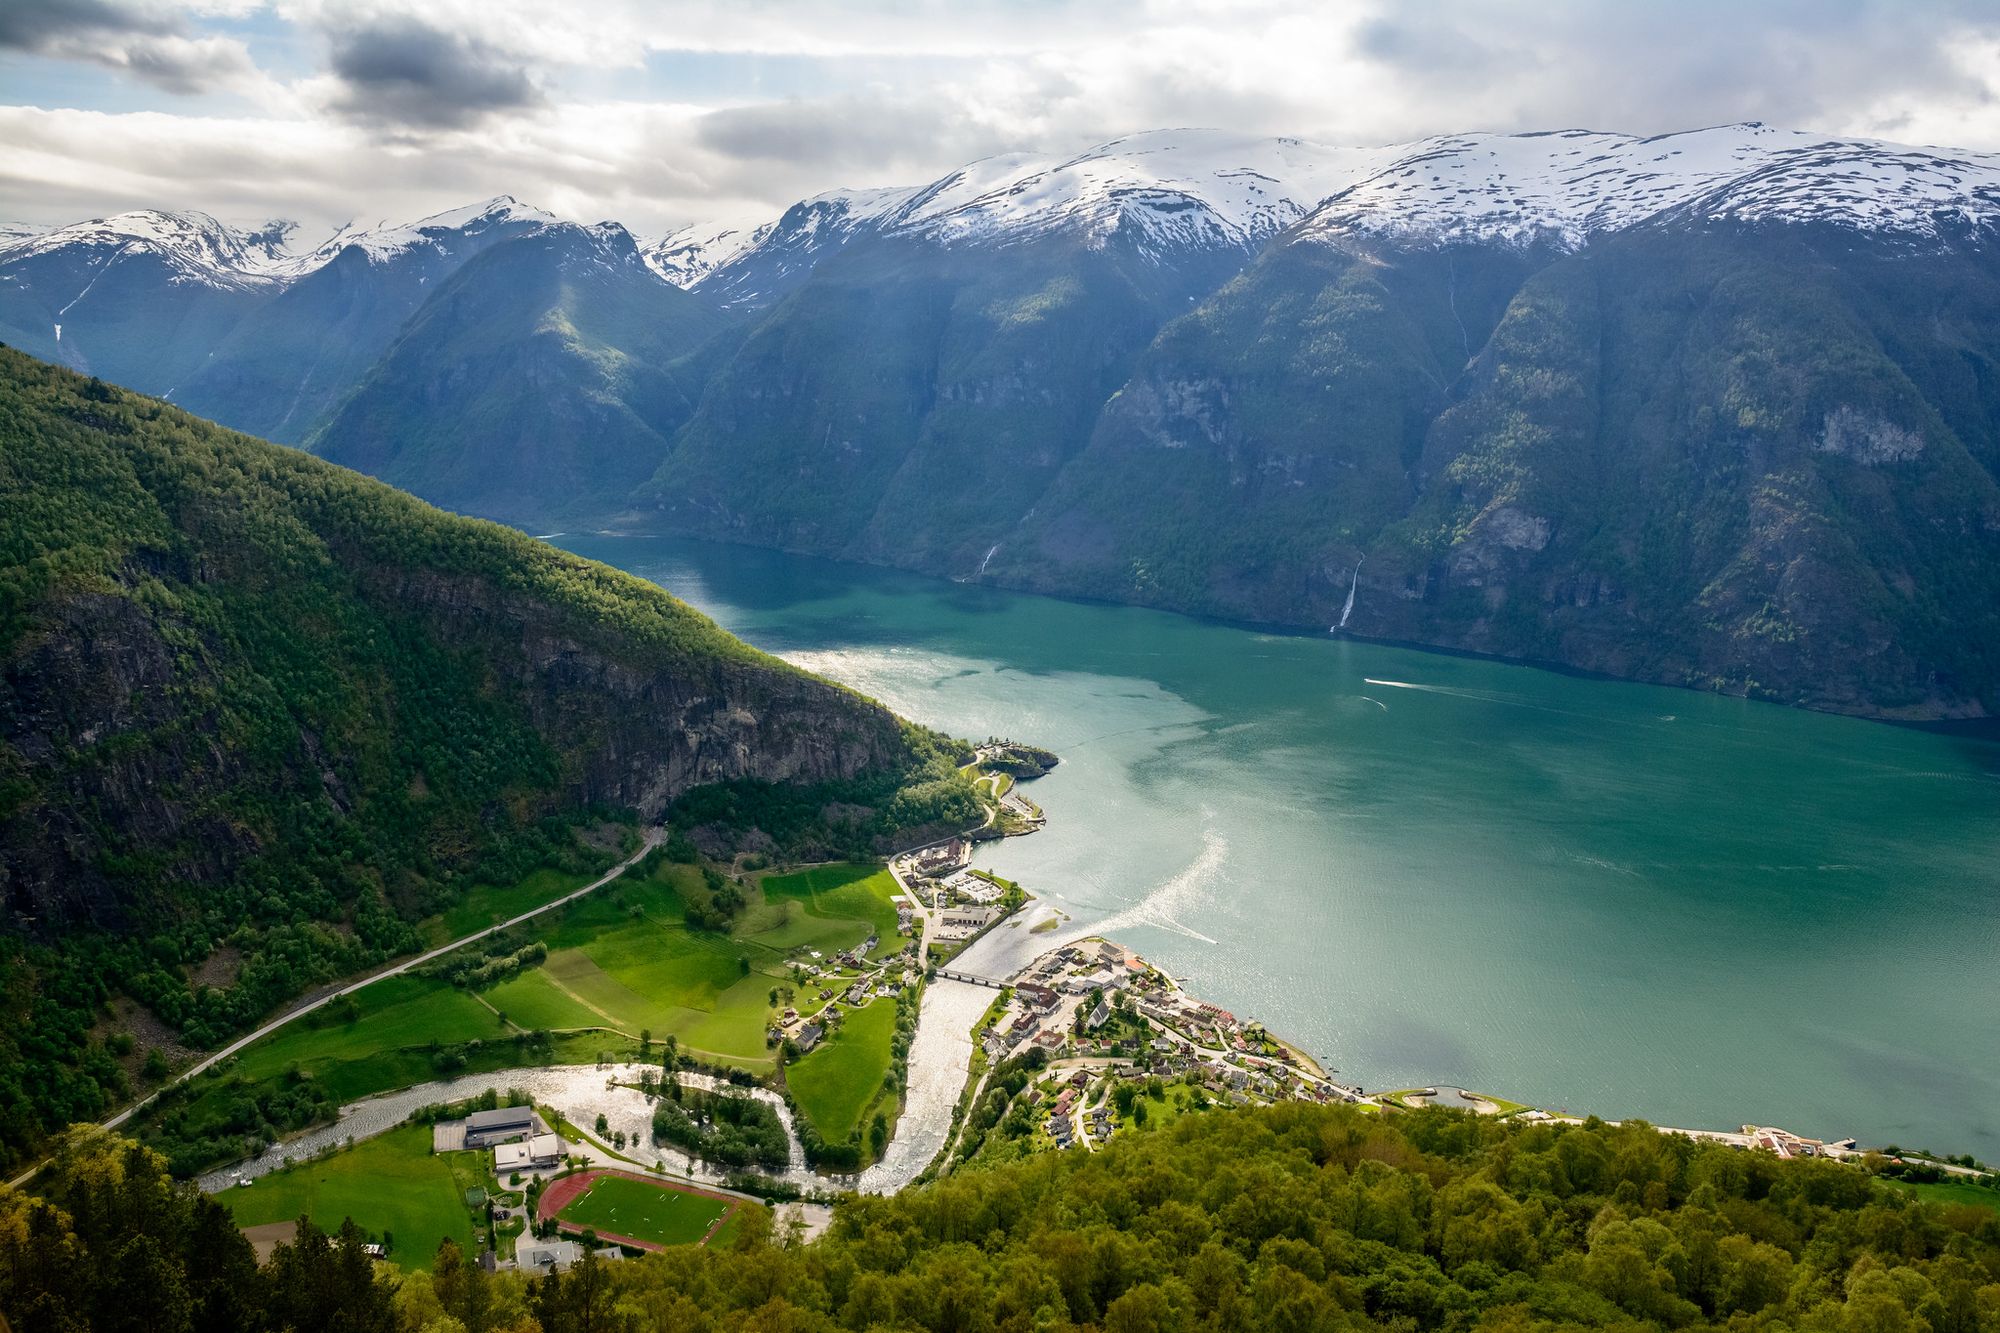 Stegastein, Aurlandsfjorden, Norway by @dconvertini (Flickr) is licensed under CC BY 2.0